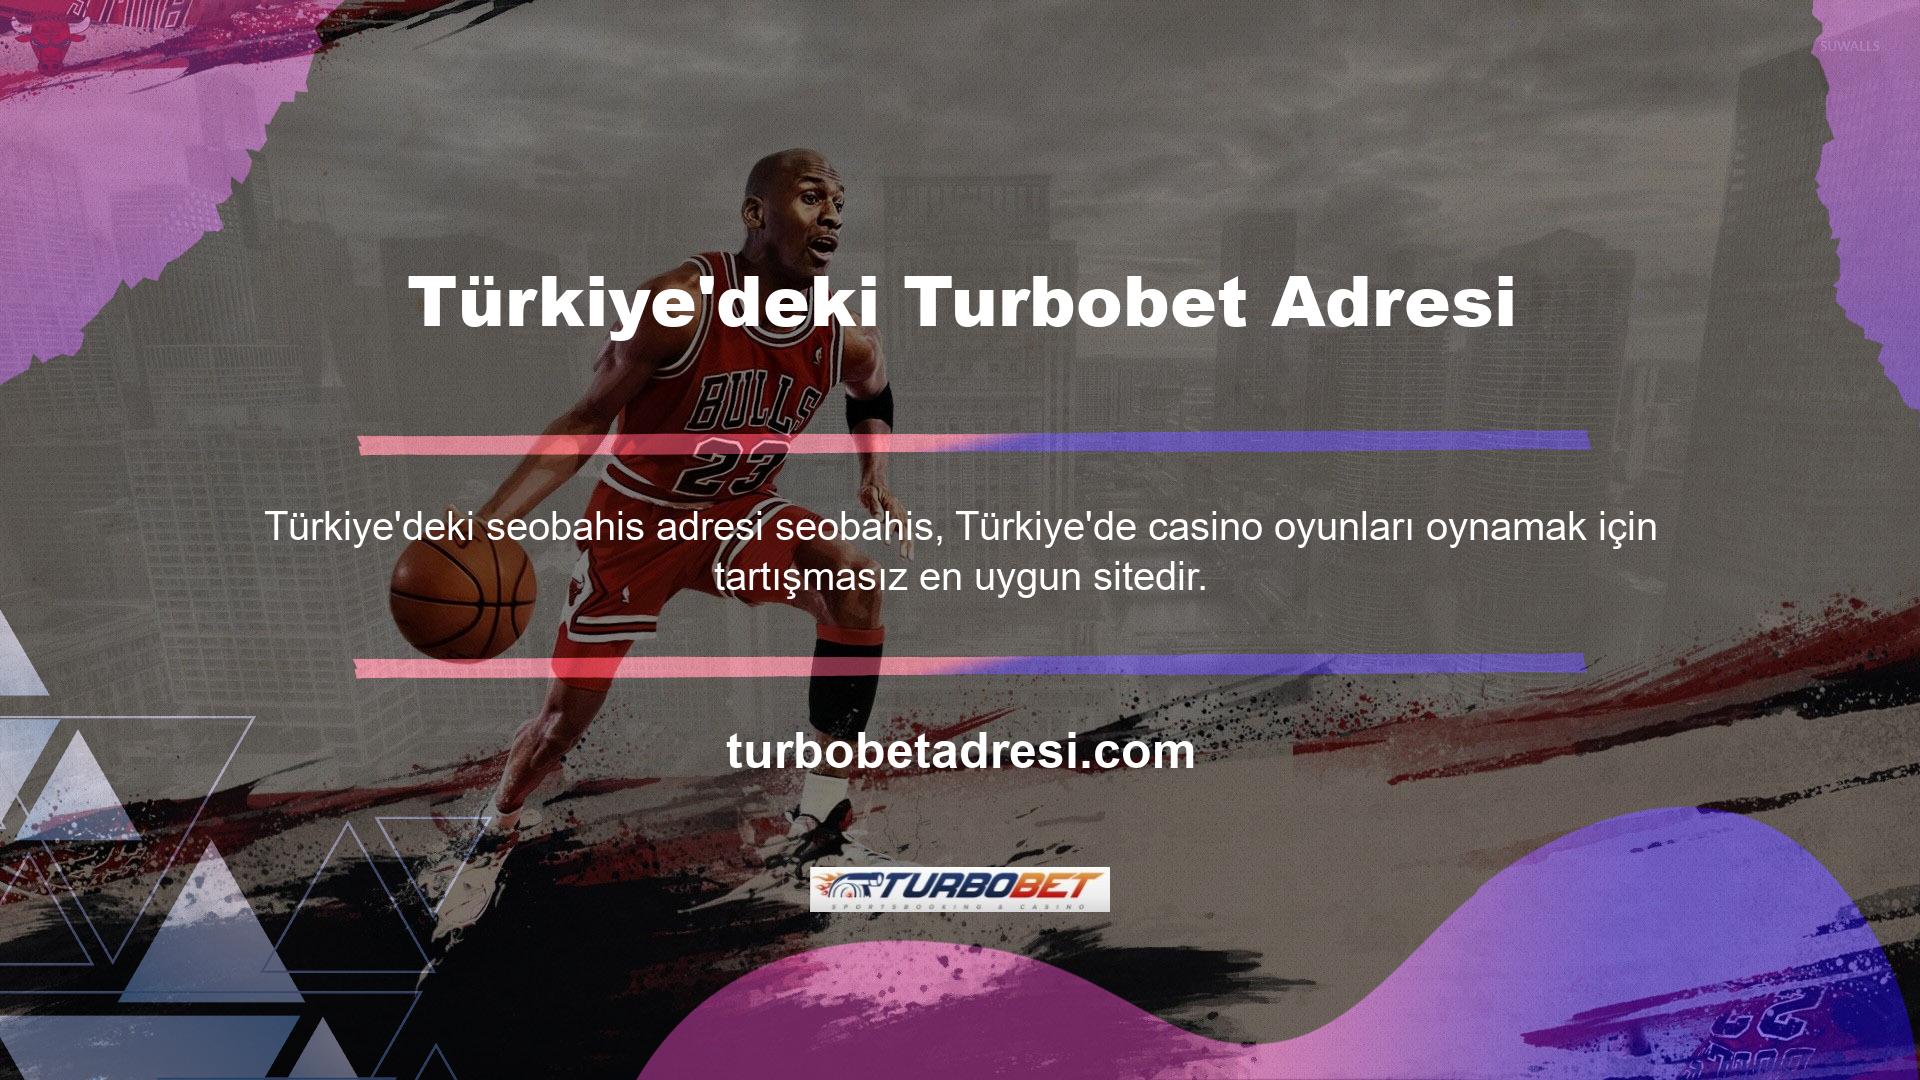 Türkiye'nin tek bahis adresi olan Turbobet, giriş sayfasında kullanıcılarına geniş bir bahis arşivi sunmaktadır